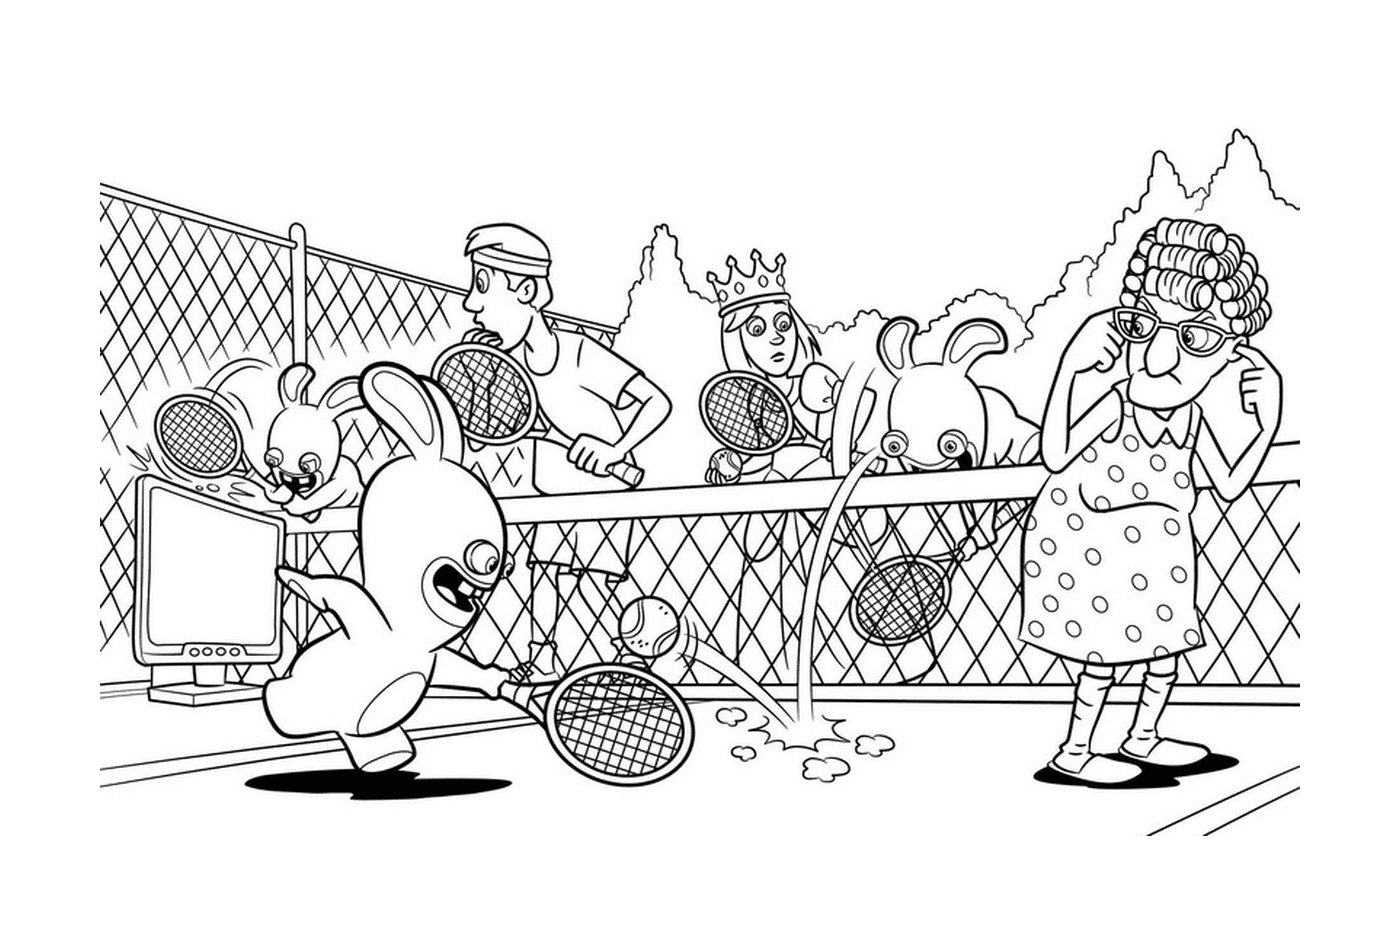  Conejos Cretinos juegan al tenis 